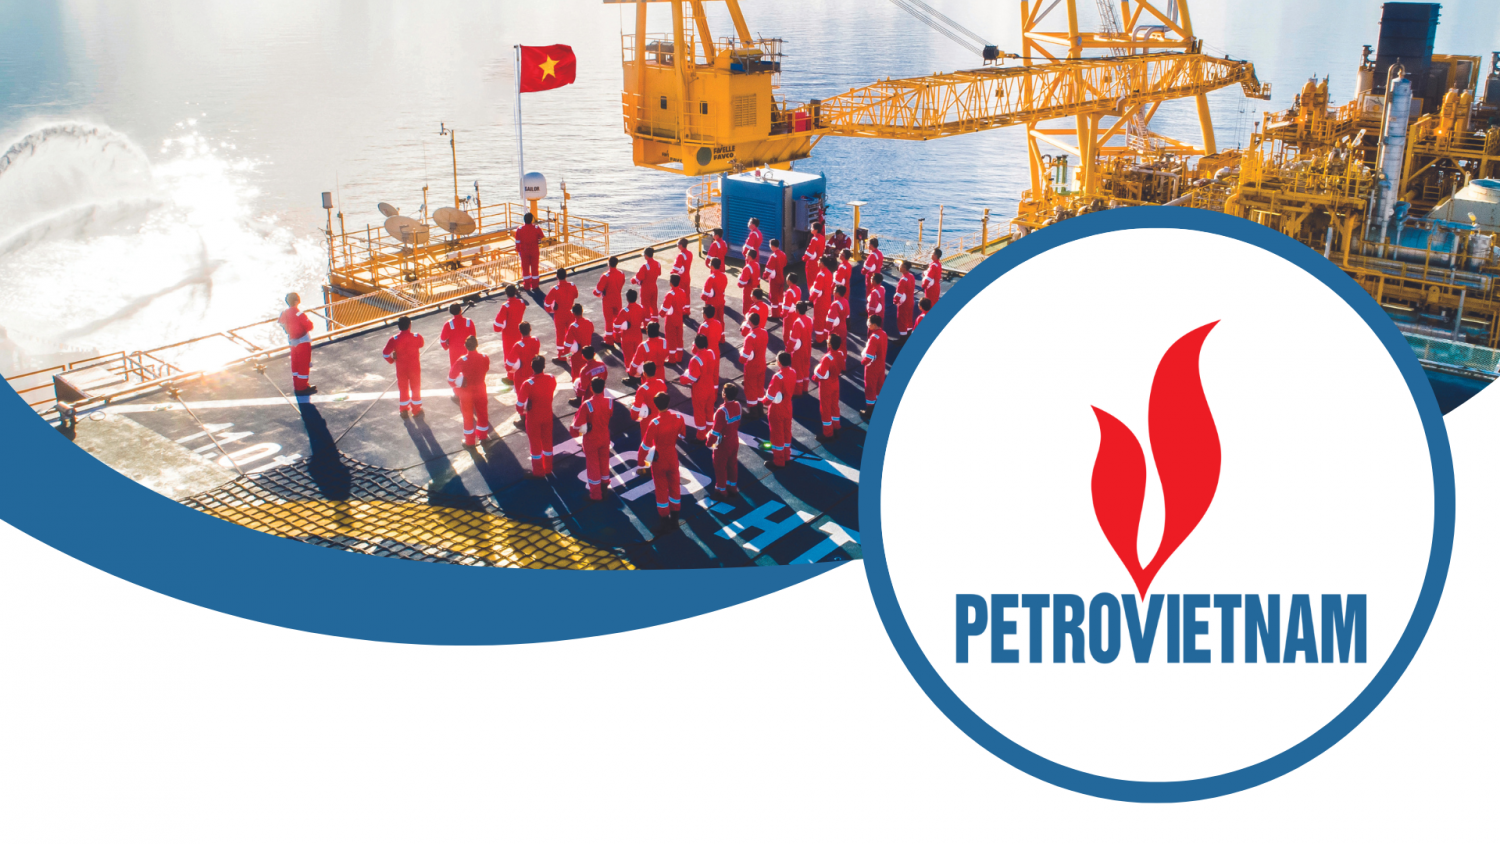 Petrovietnam phát triển vì một Tổ quốc Việt Nam vững mạnh, hùng cường”